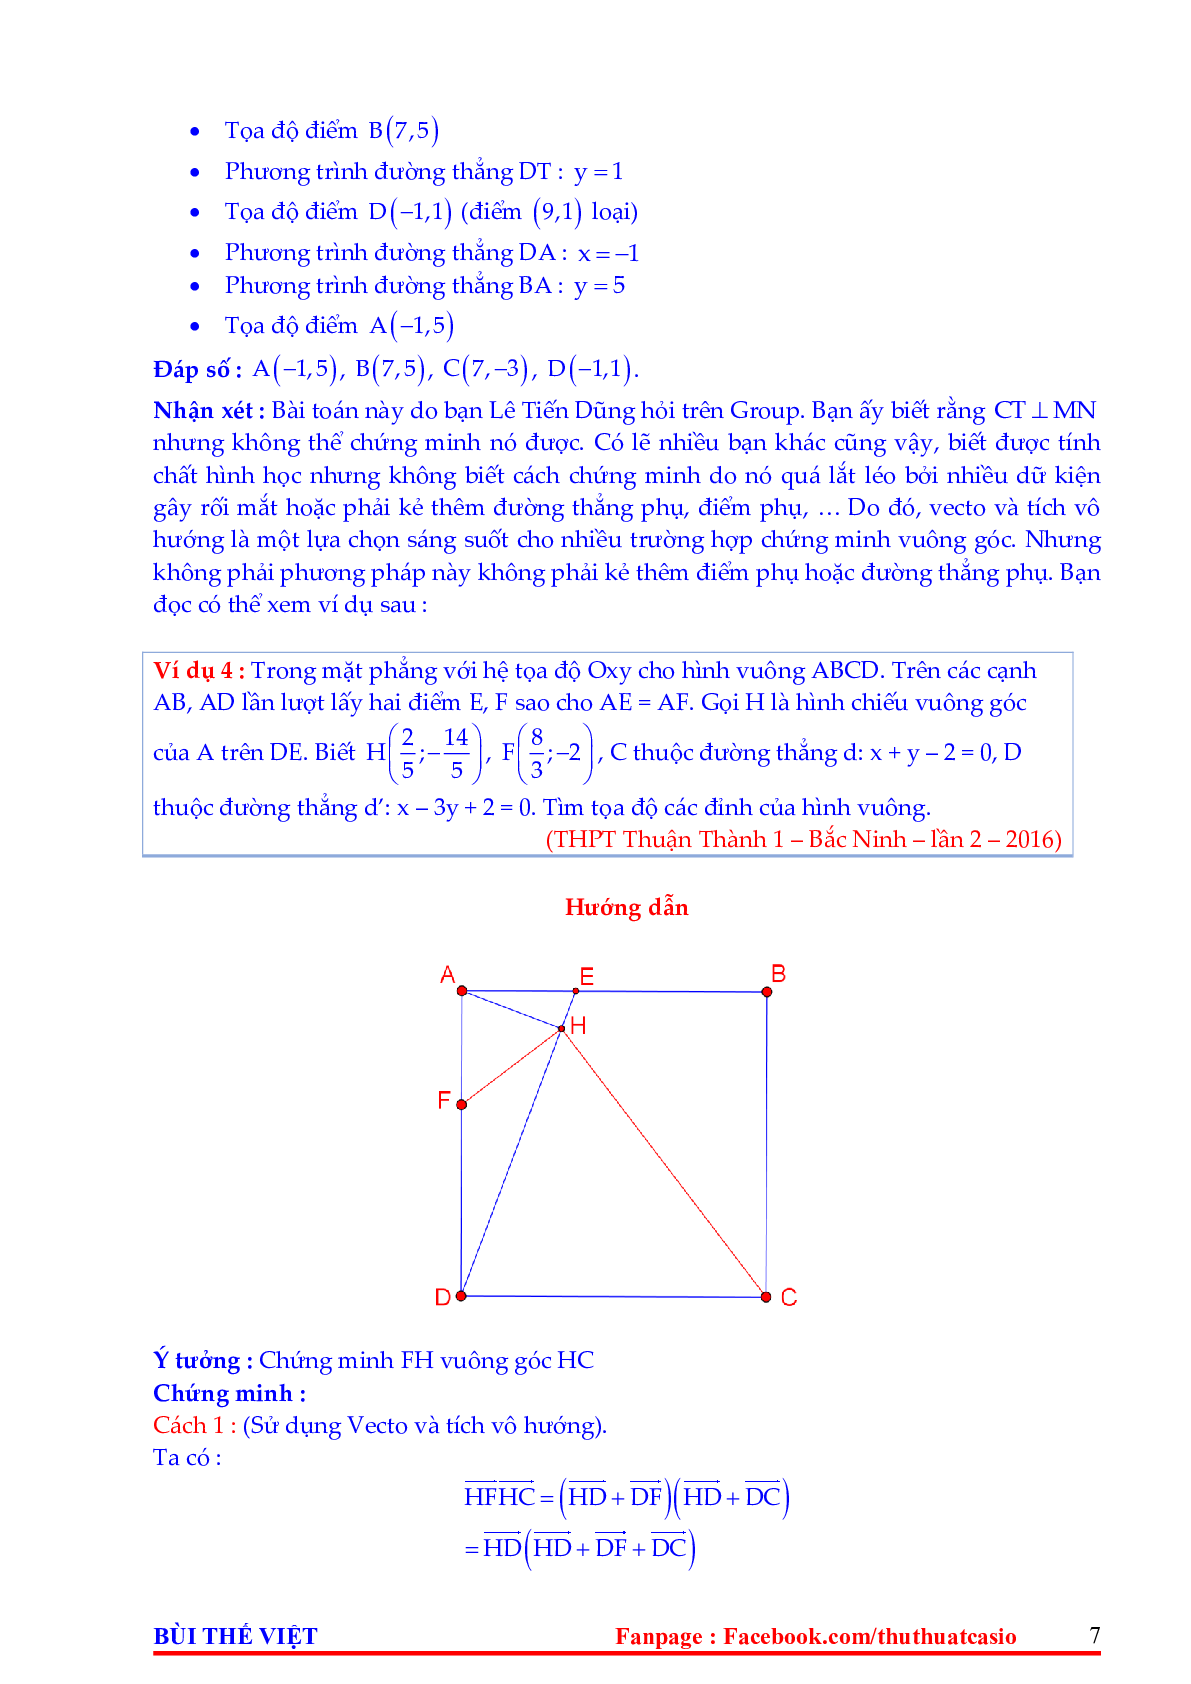 Một số phương pháp giải bài toán hình học tọa độ phẳng Oxy (trang 7)